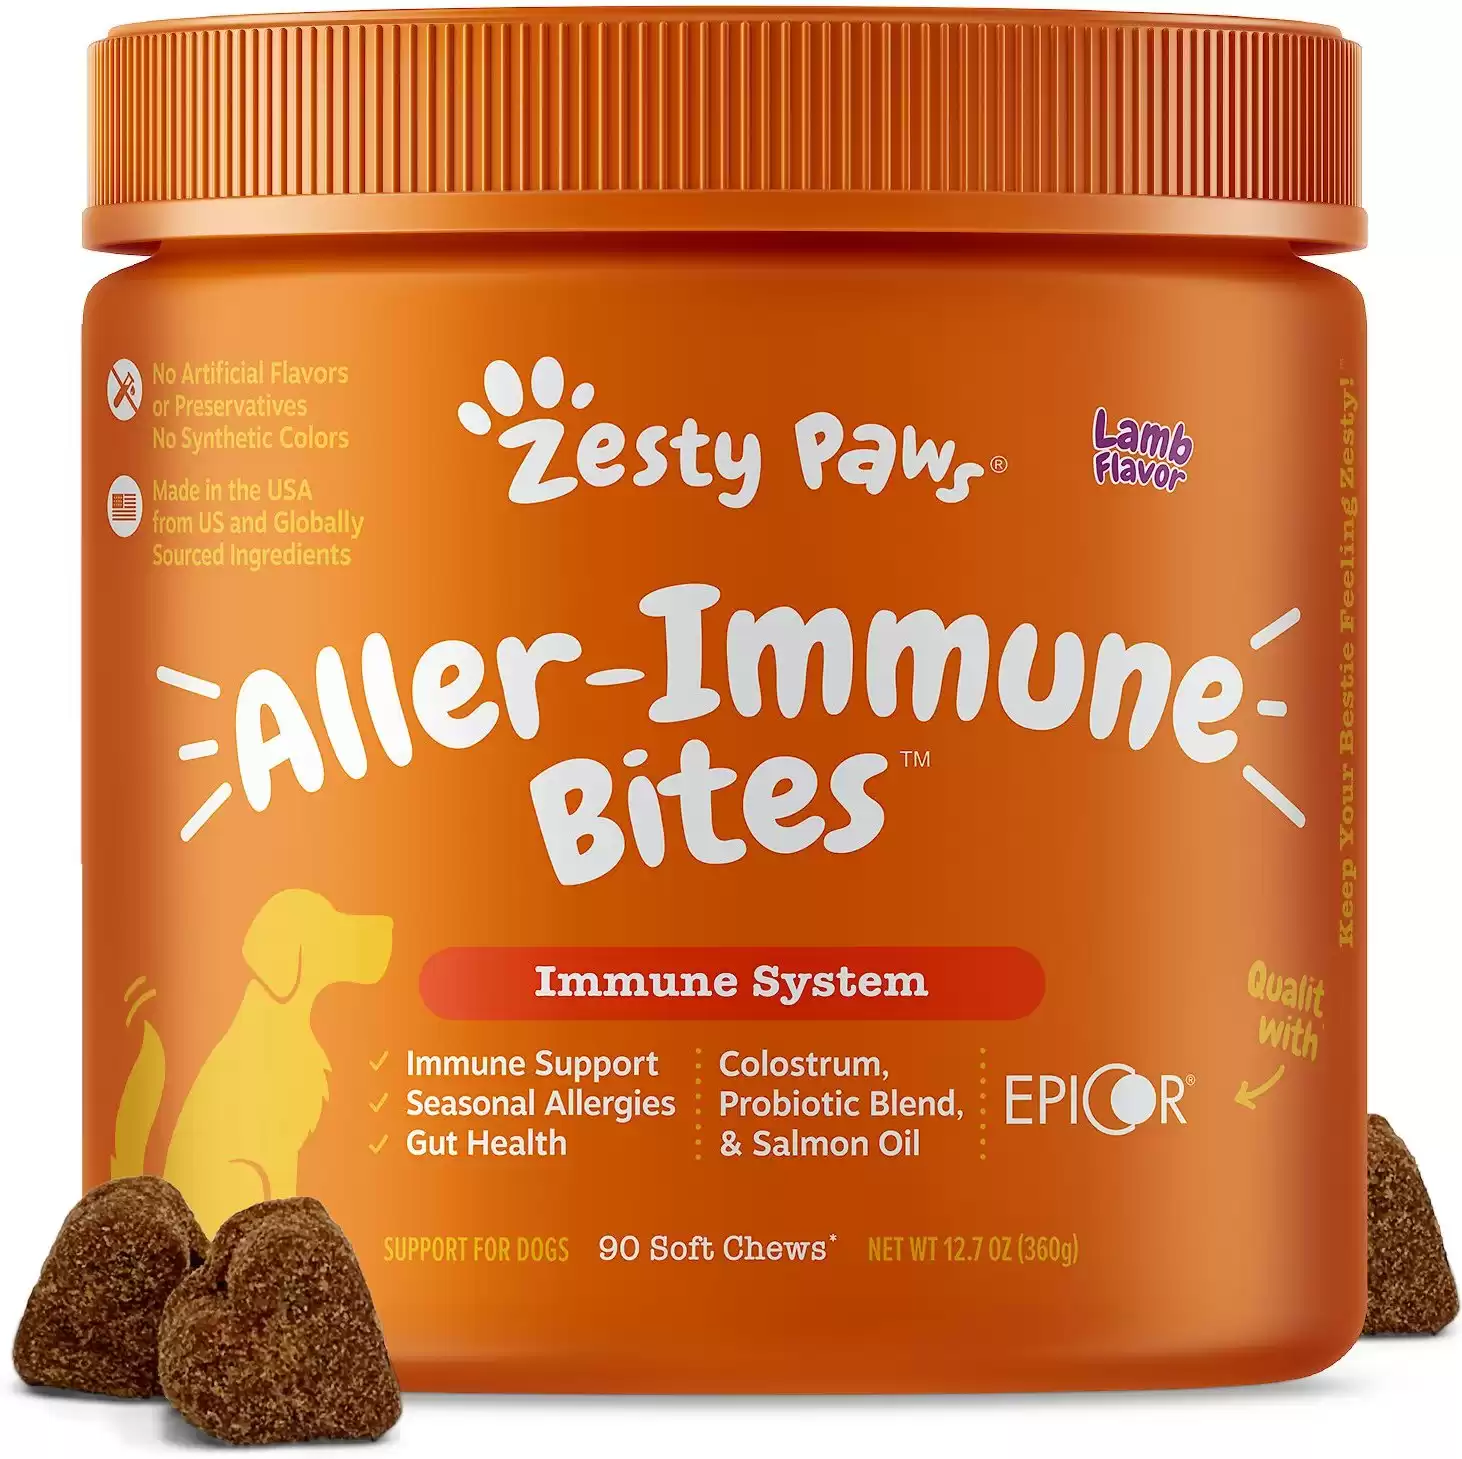 Zesty Paws Aller-Immune Bites Soft Chews Allergy & Immune Supplement